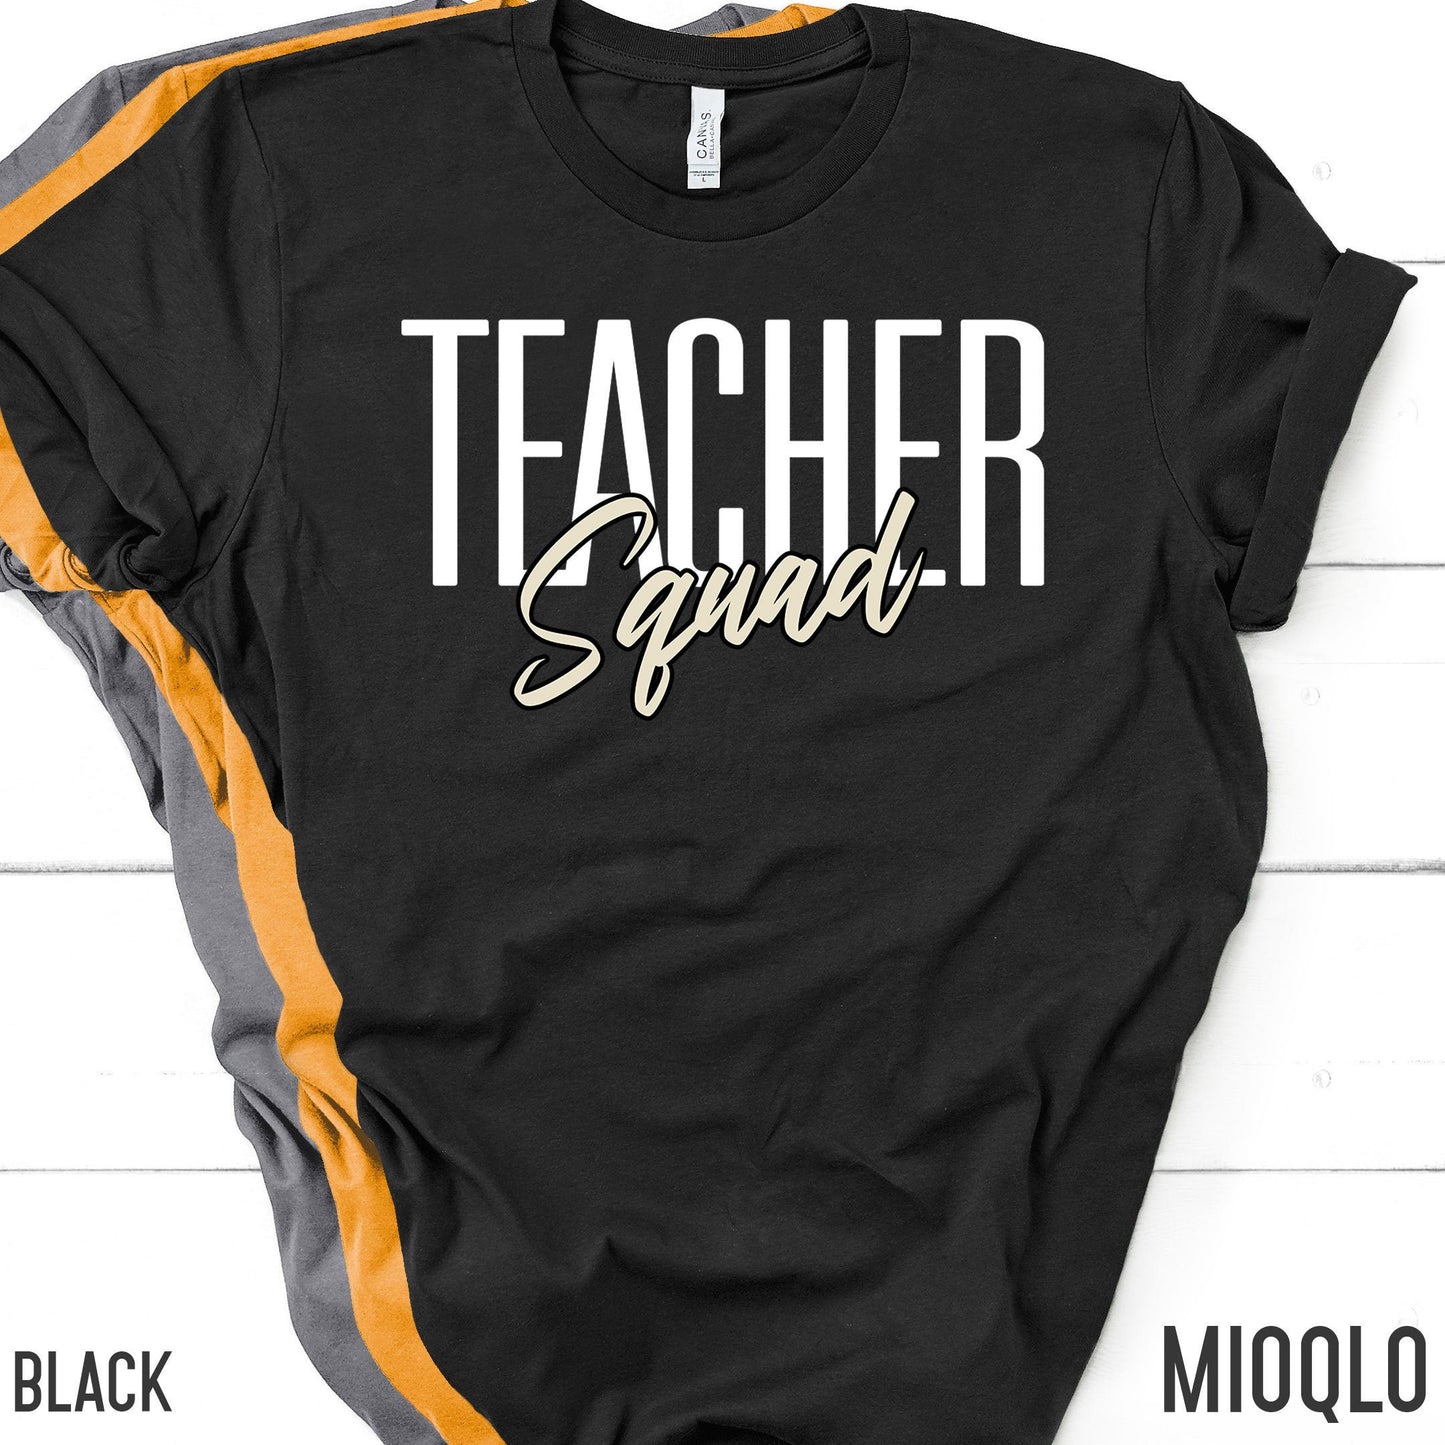 Teacher Squad Shirt, Unisex Comfy Teacher Tee, Teacher Team School Spirit Top, Teacher Appreciation Shirt, Grade Level Tank, School Mascot